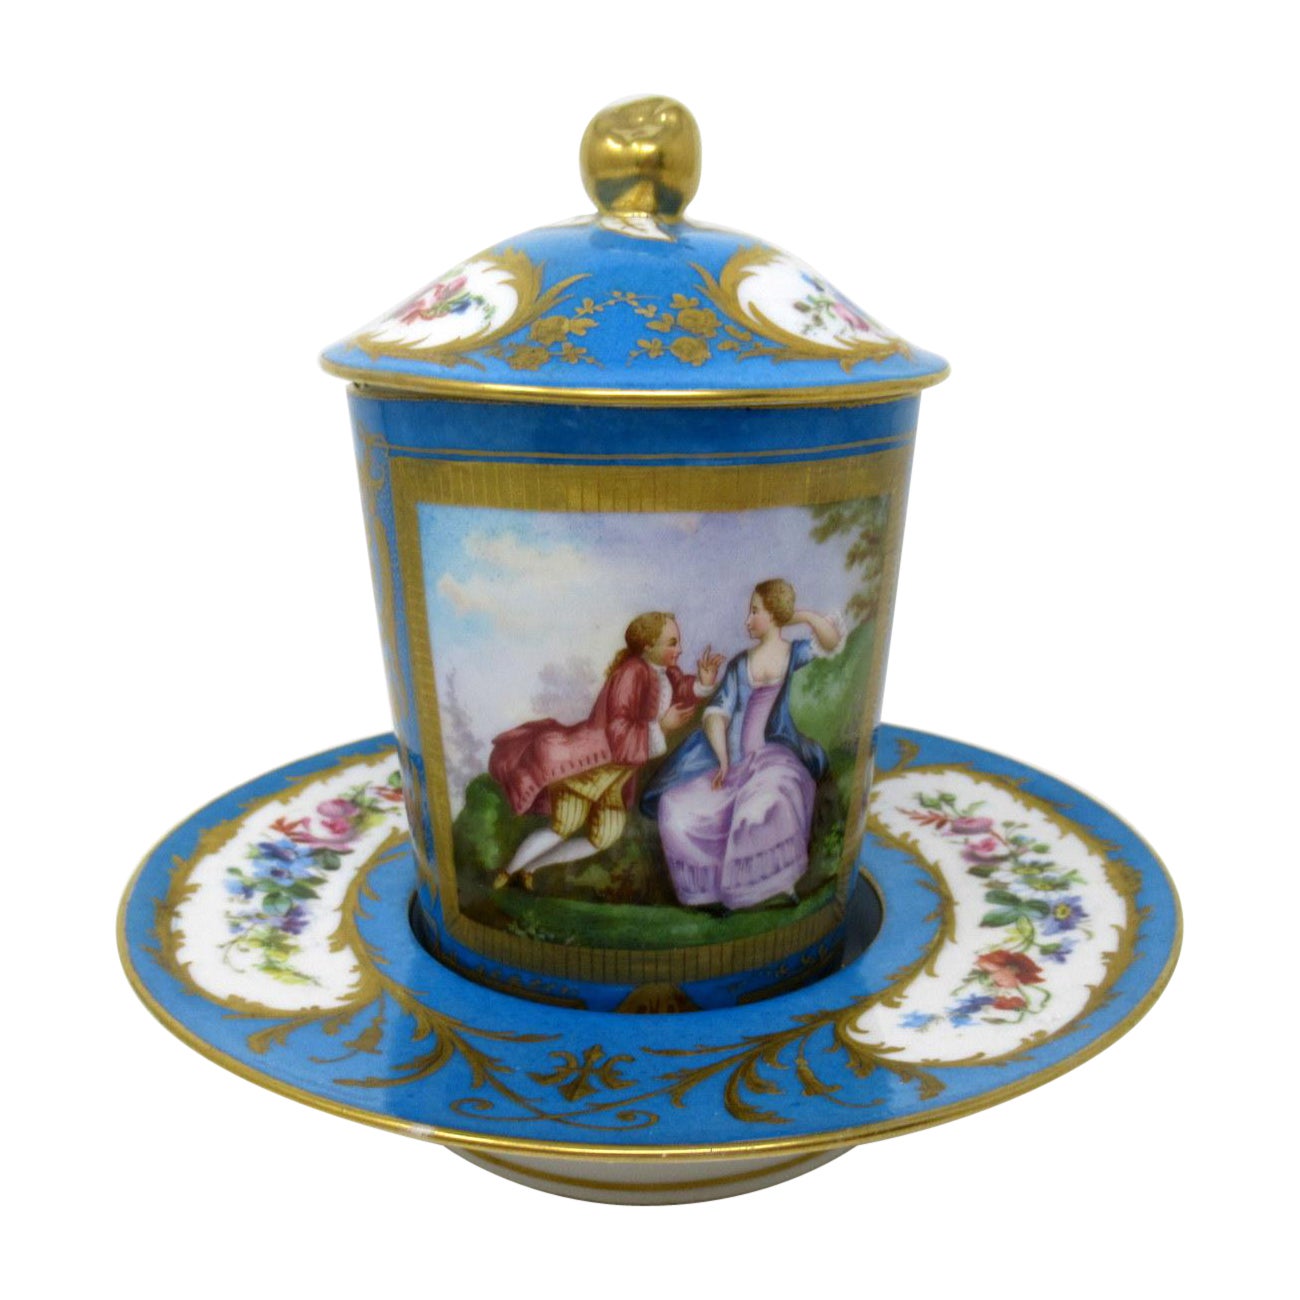 Antique French Sevres Porcelain Celest Blue Gilt Trembleuse Chocolate Cup Saucer